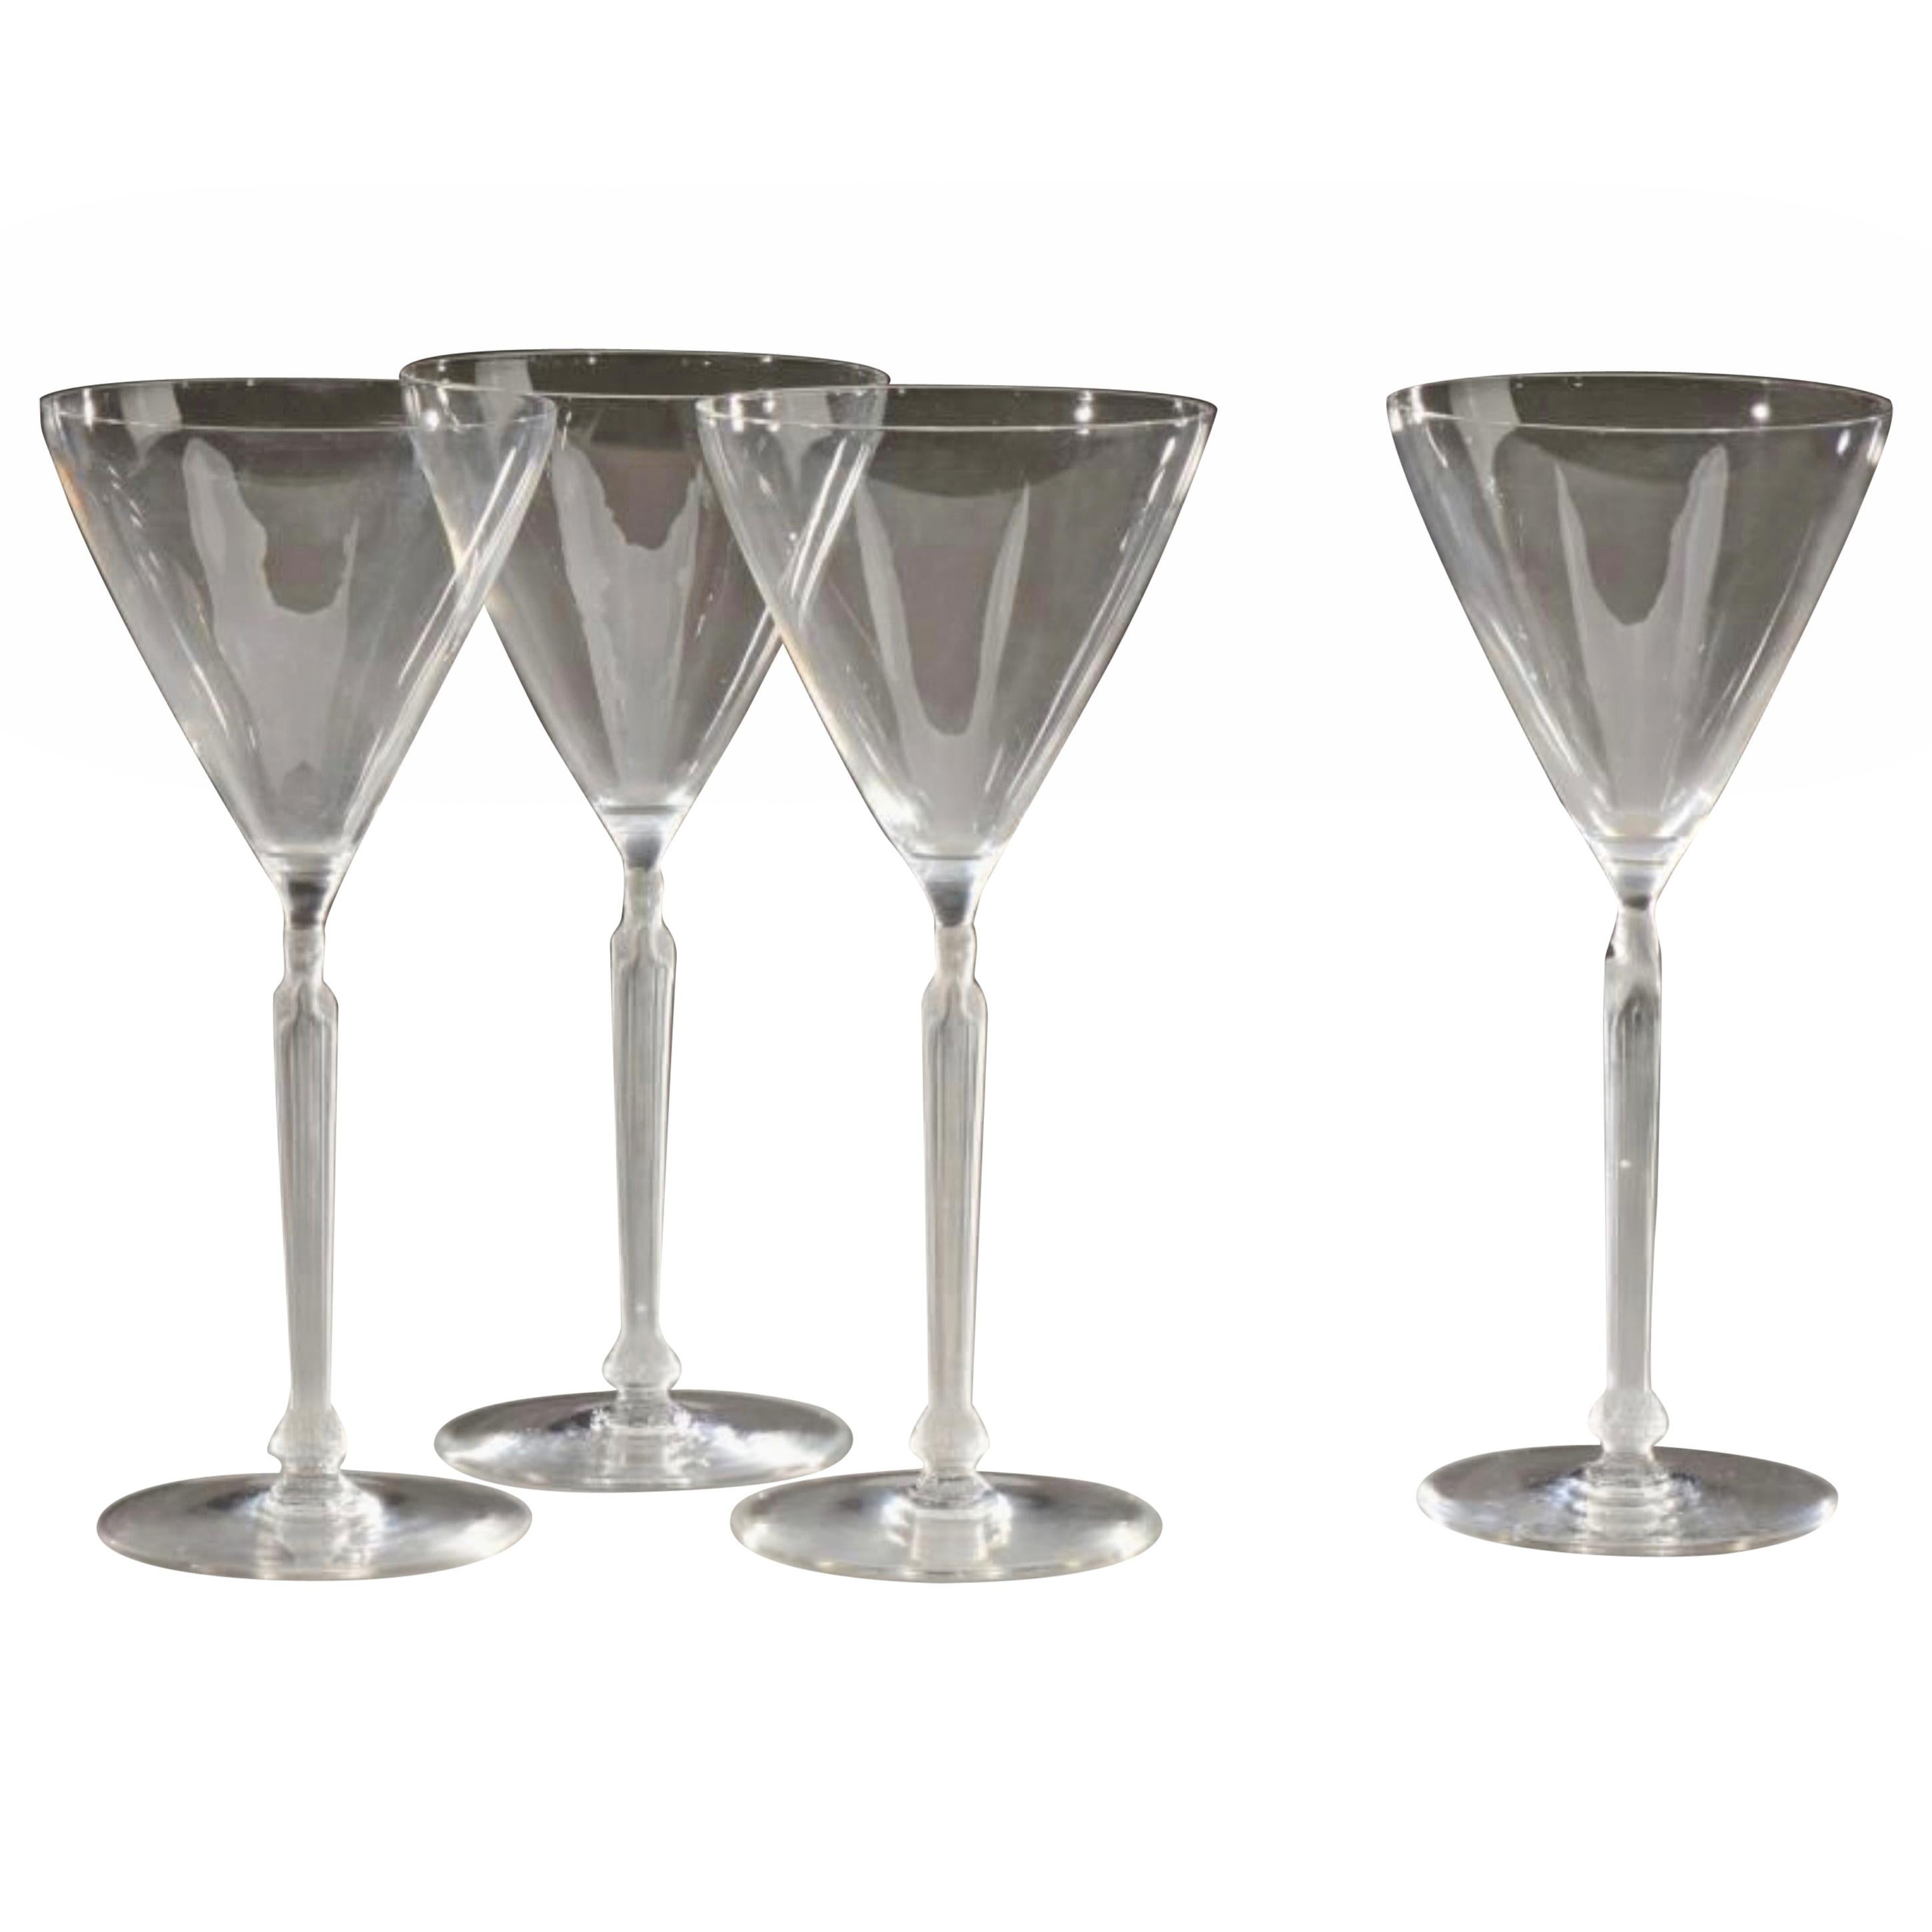 René Lalique Tableware "Clos Sainte-Odile" 5 Glasses